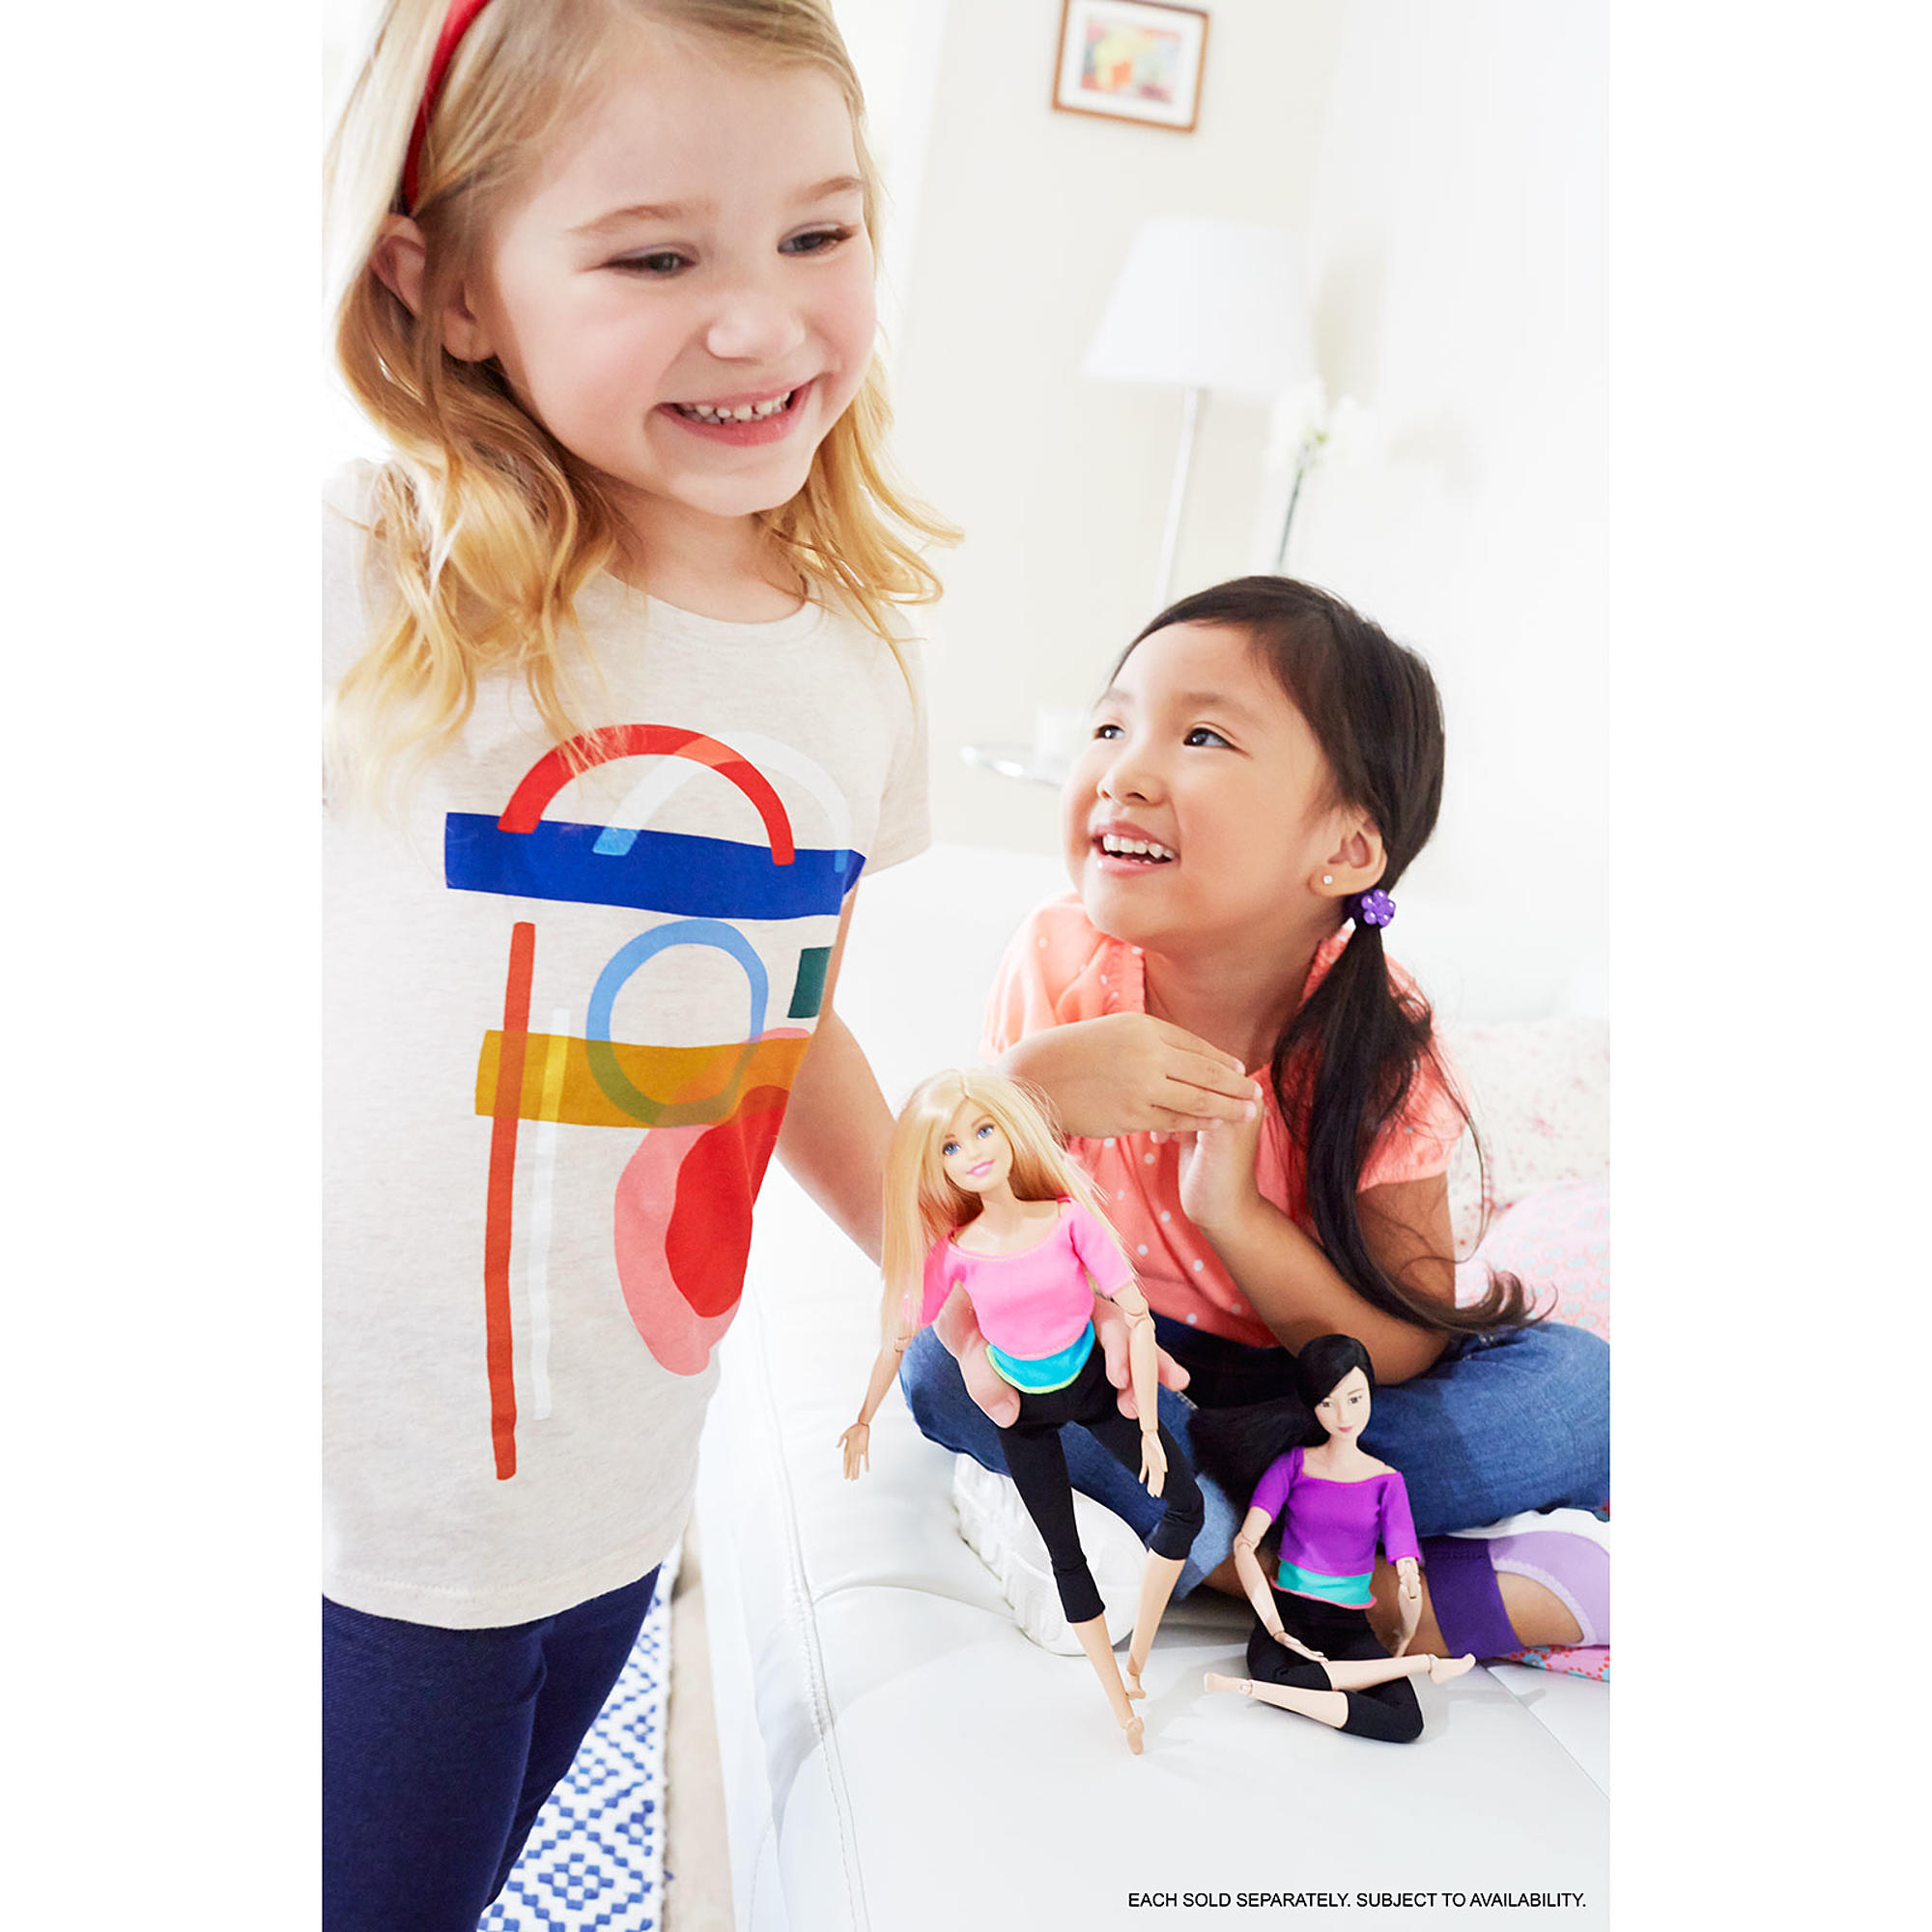 Кукла Барби - Безграничные движения - Блондинка в розовом топе (Mattel, DHL82-DHL81 